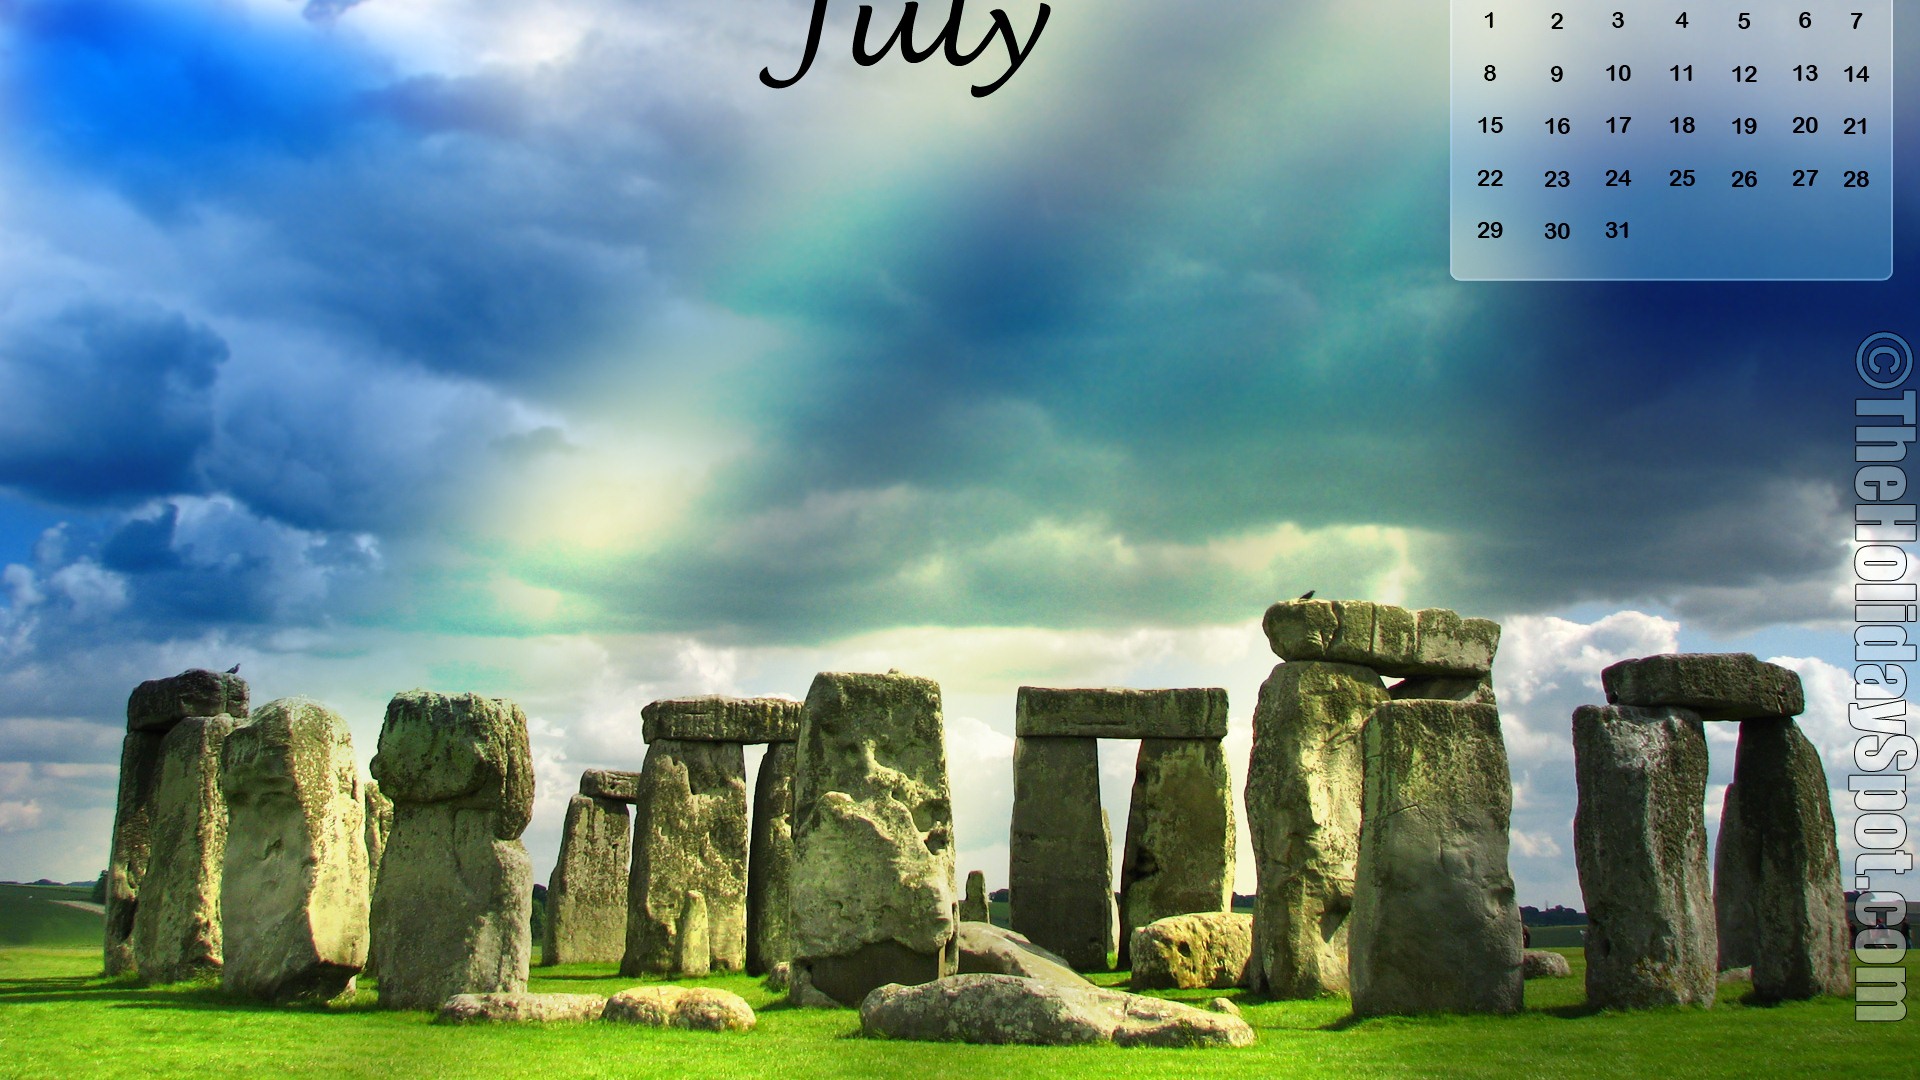 July 2012 Calendar wallpapers (2) #14 - 1920x1080